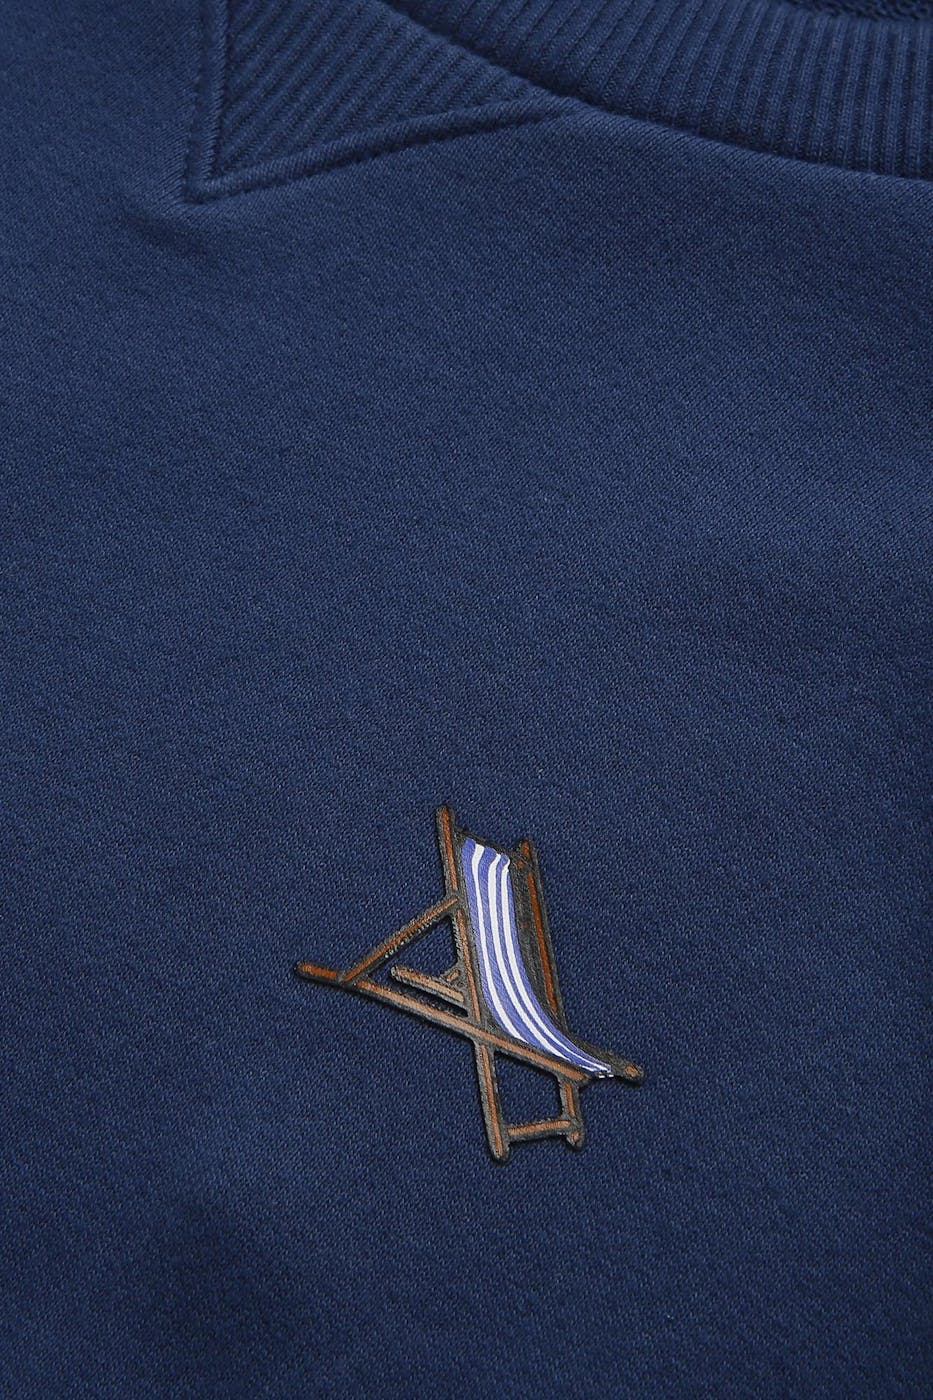 Antwrp - Donkerblauwe Beach Chair sweater